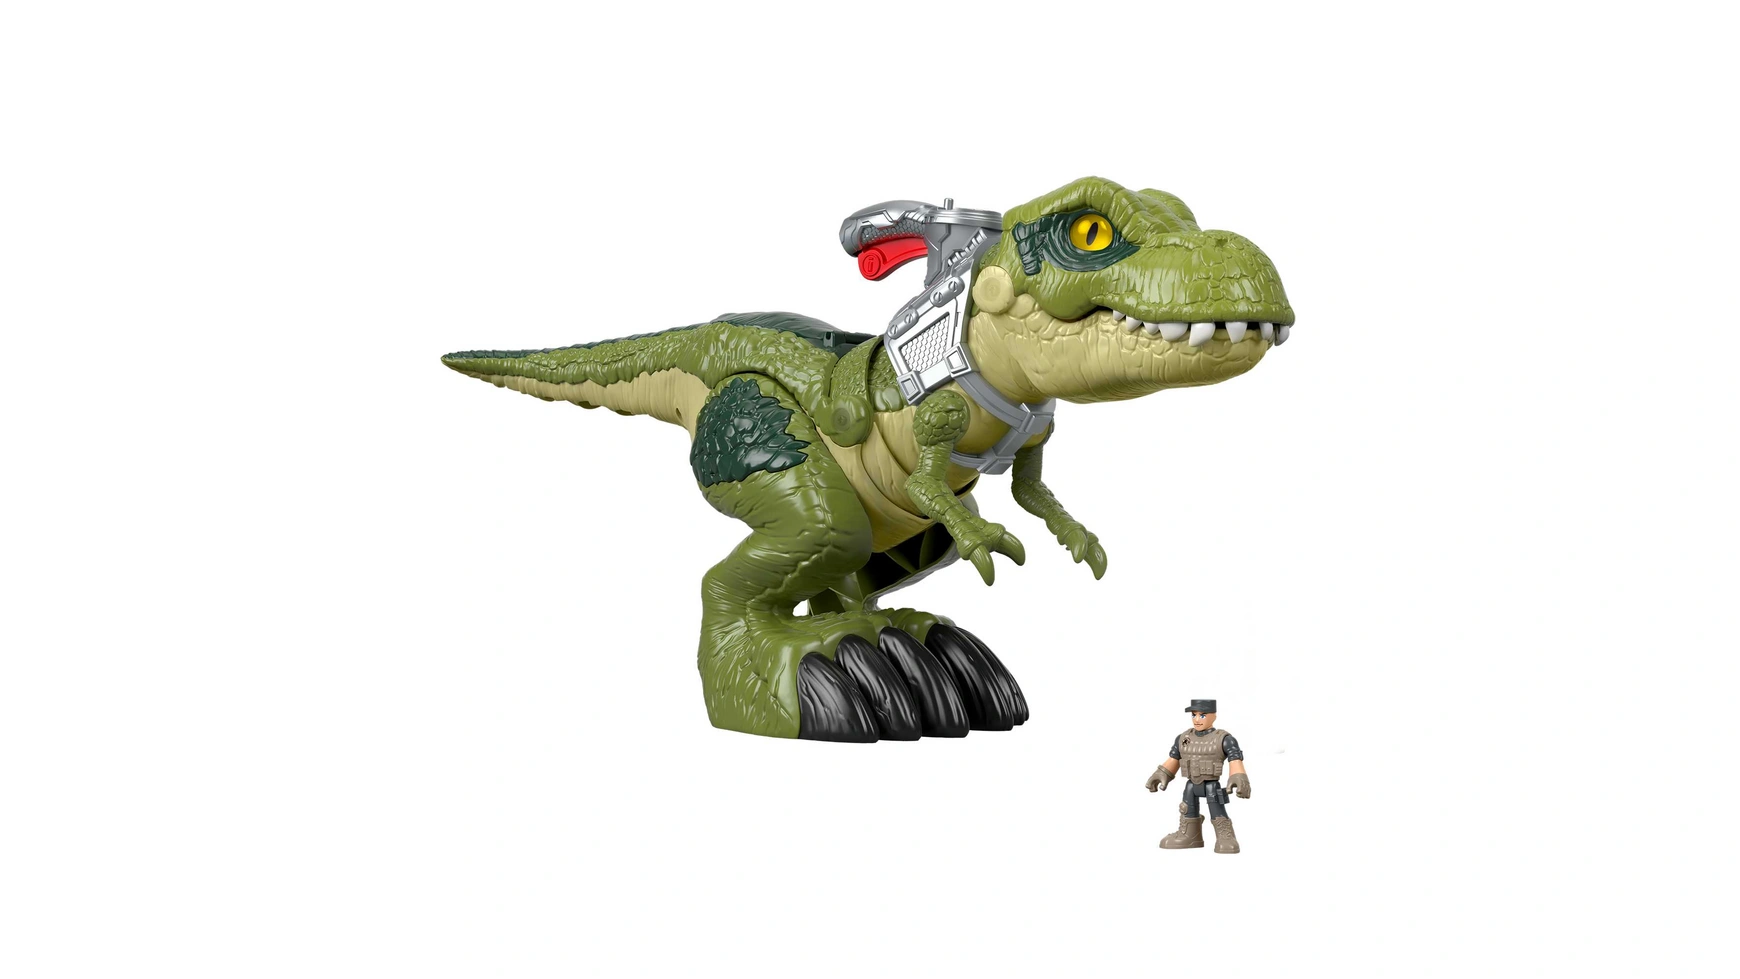 Игрушка-динозавр Fisher-Price Imaginext Jurassic World Hungry T-Rex imaginext новые приключения в мире юрского периода t rex xl